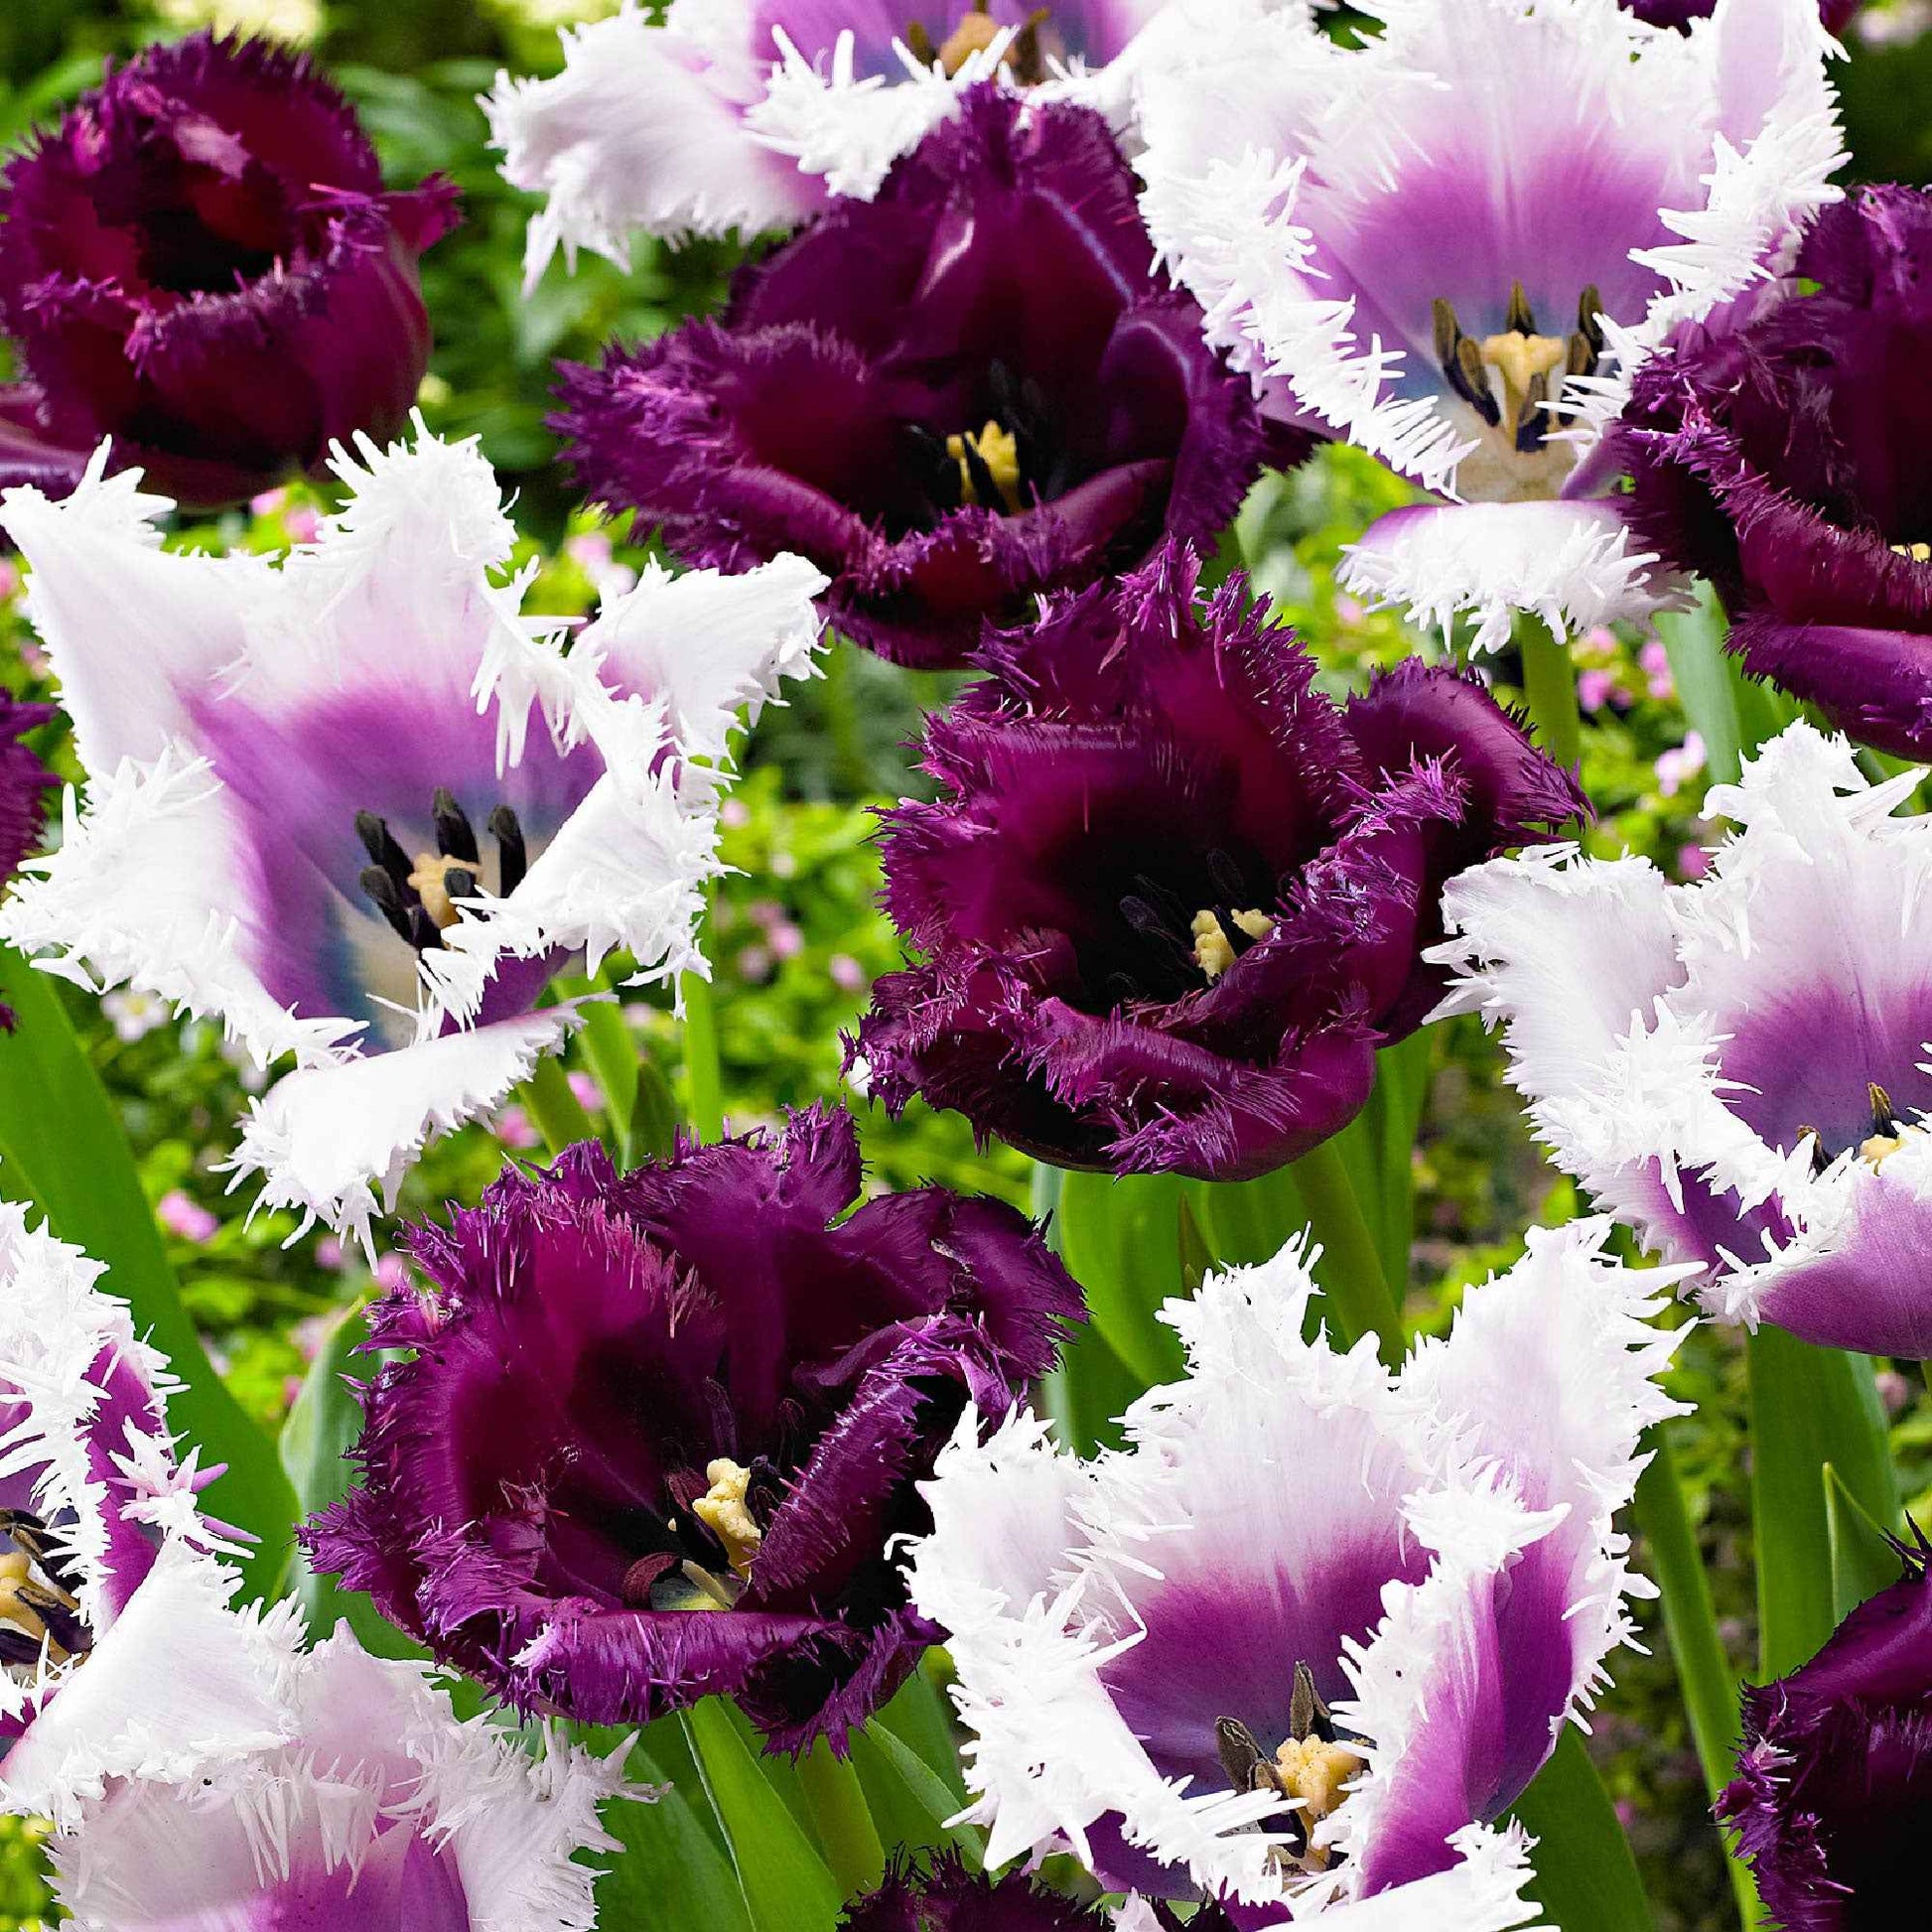 15x Tulipes Tulipa - Mélange 'Van Gogh' violet-blanc - Packs de bulbes de fleurs